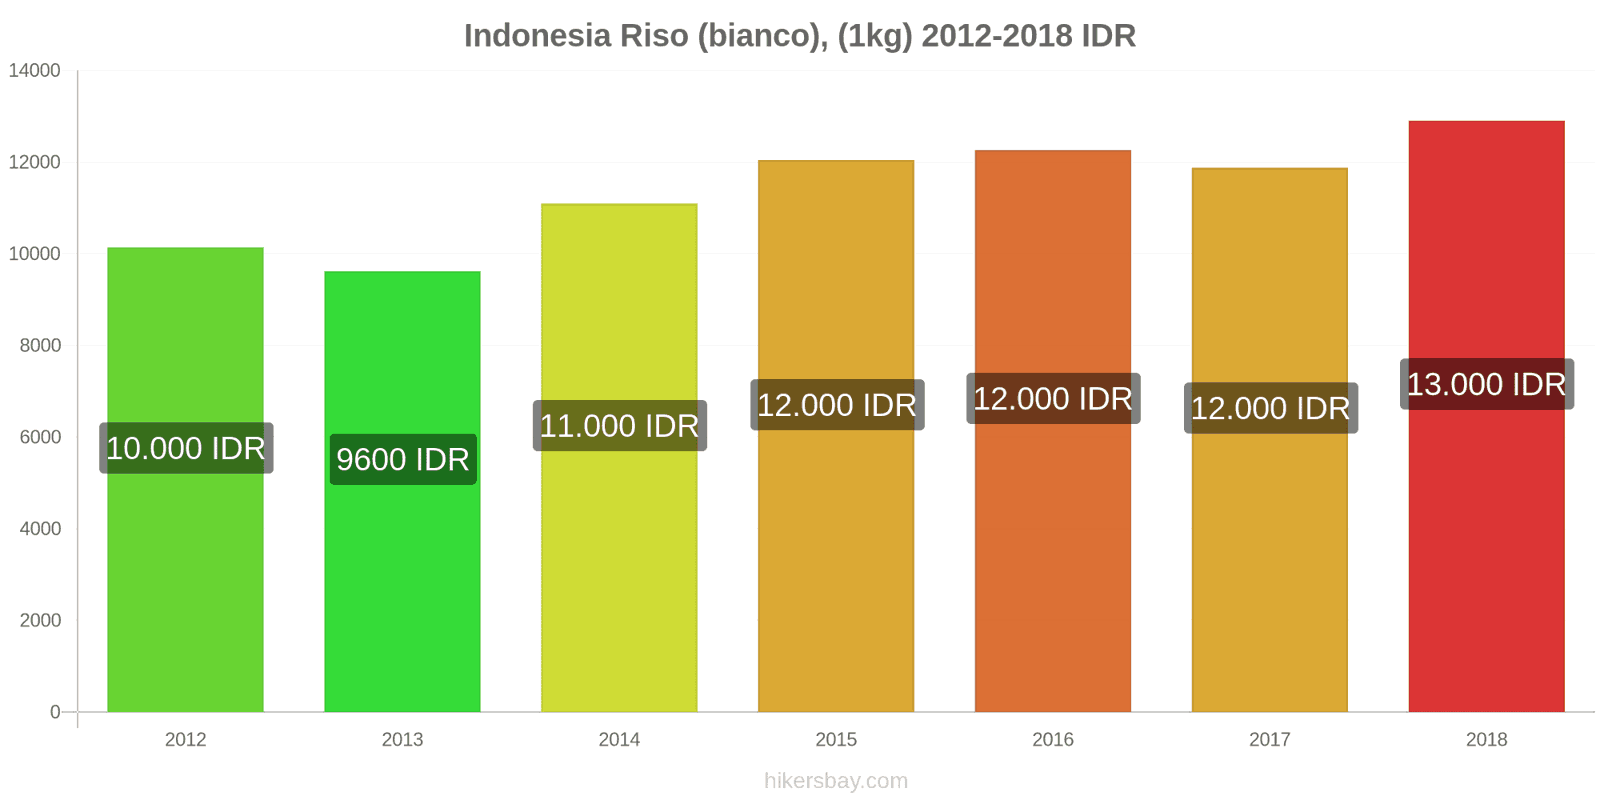 Indonesia cambi di prezzo Chilo di riso bianco hikersbay.com